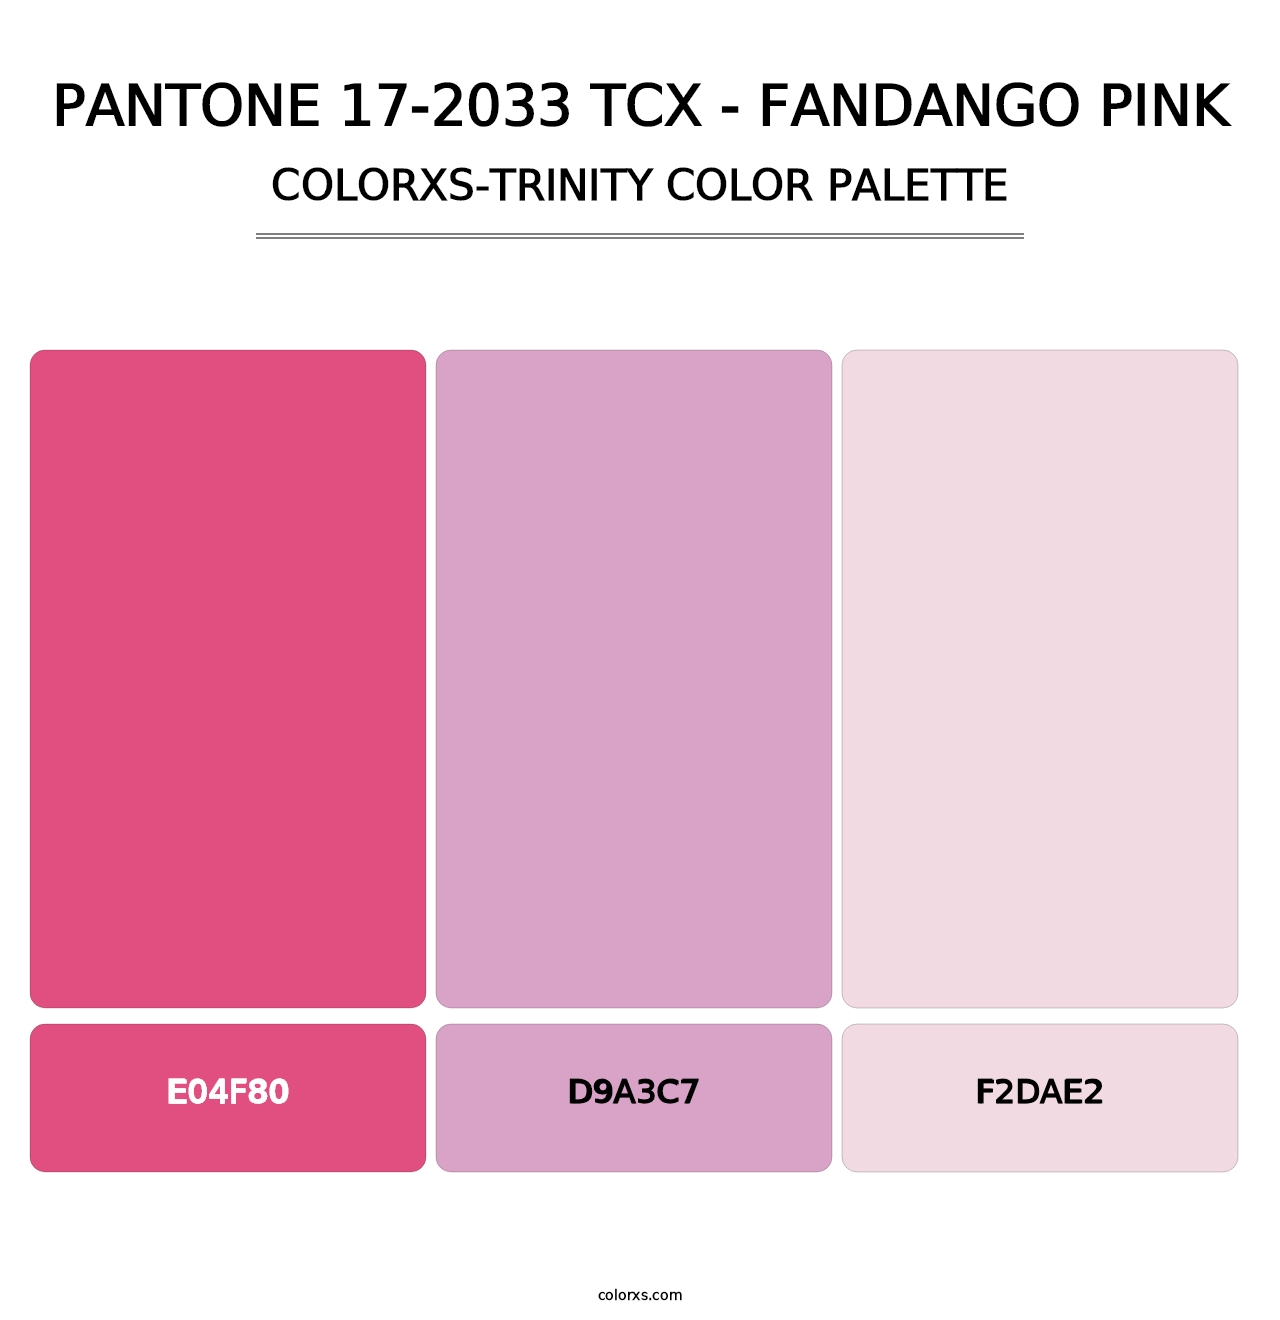 PANTONE 17-2033 TCX - Fandango Pink - Colorxs Trinity Palette